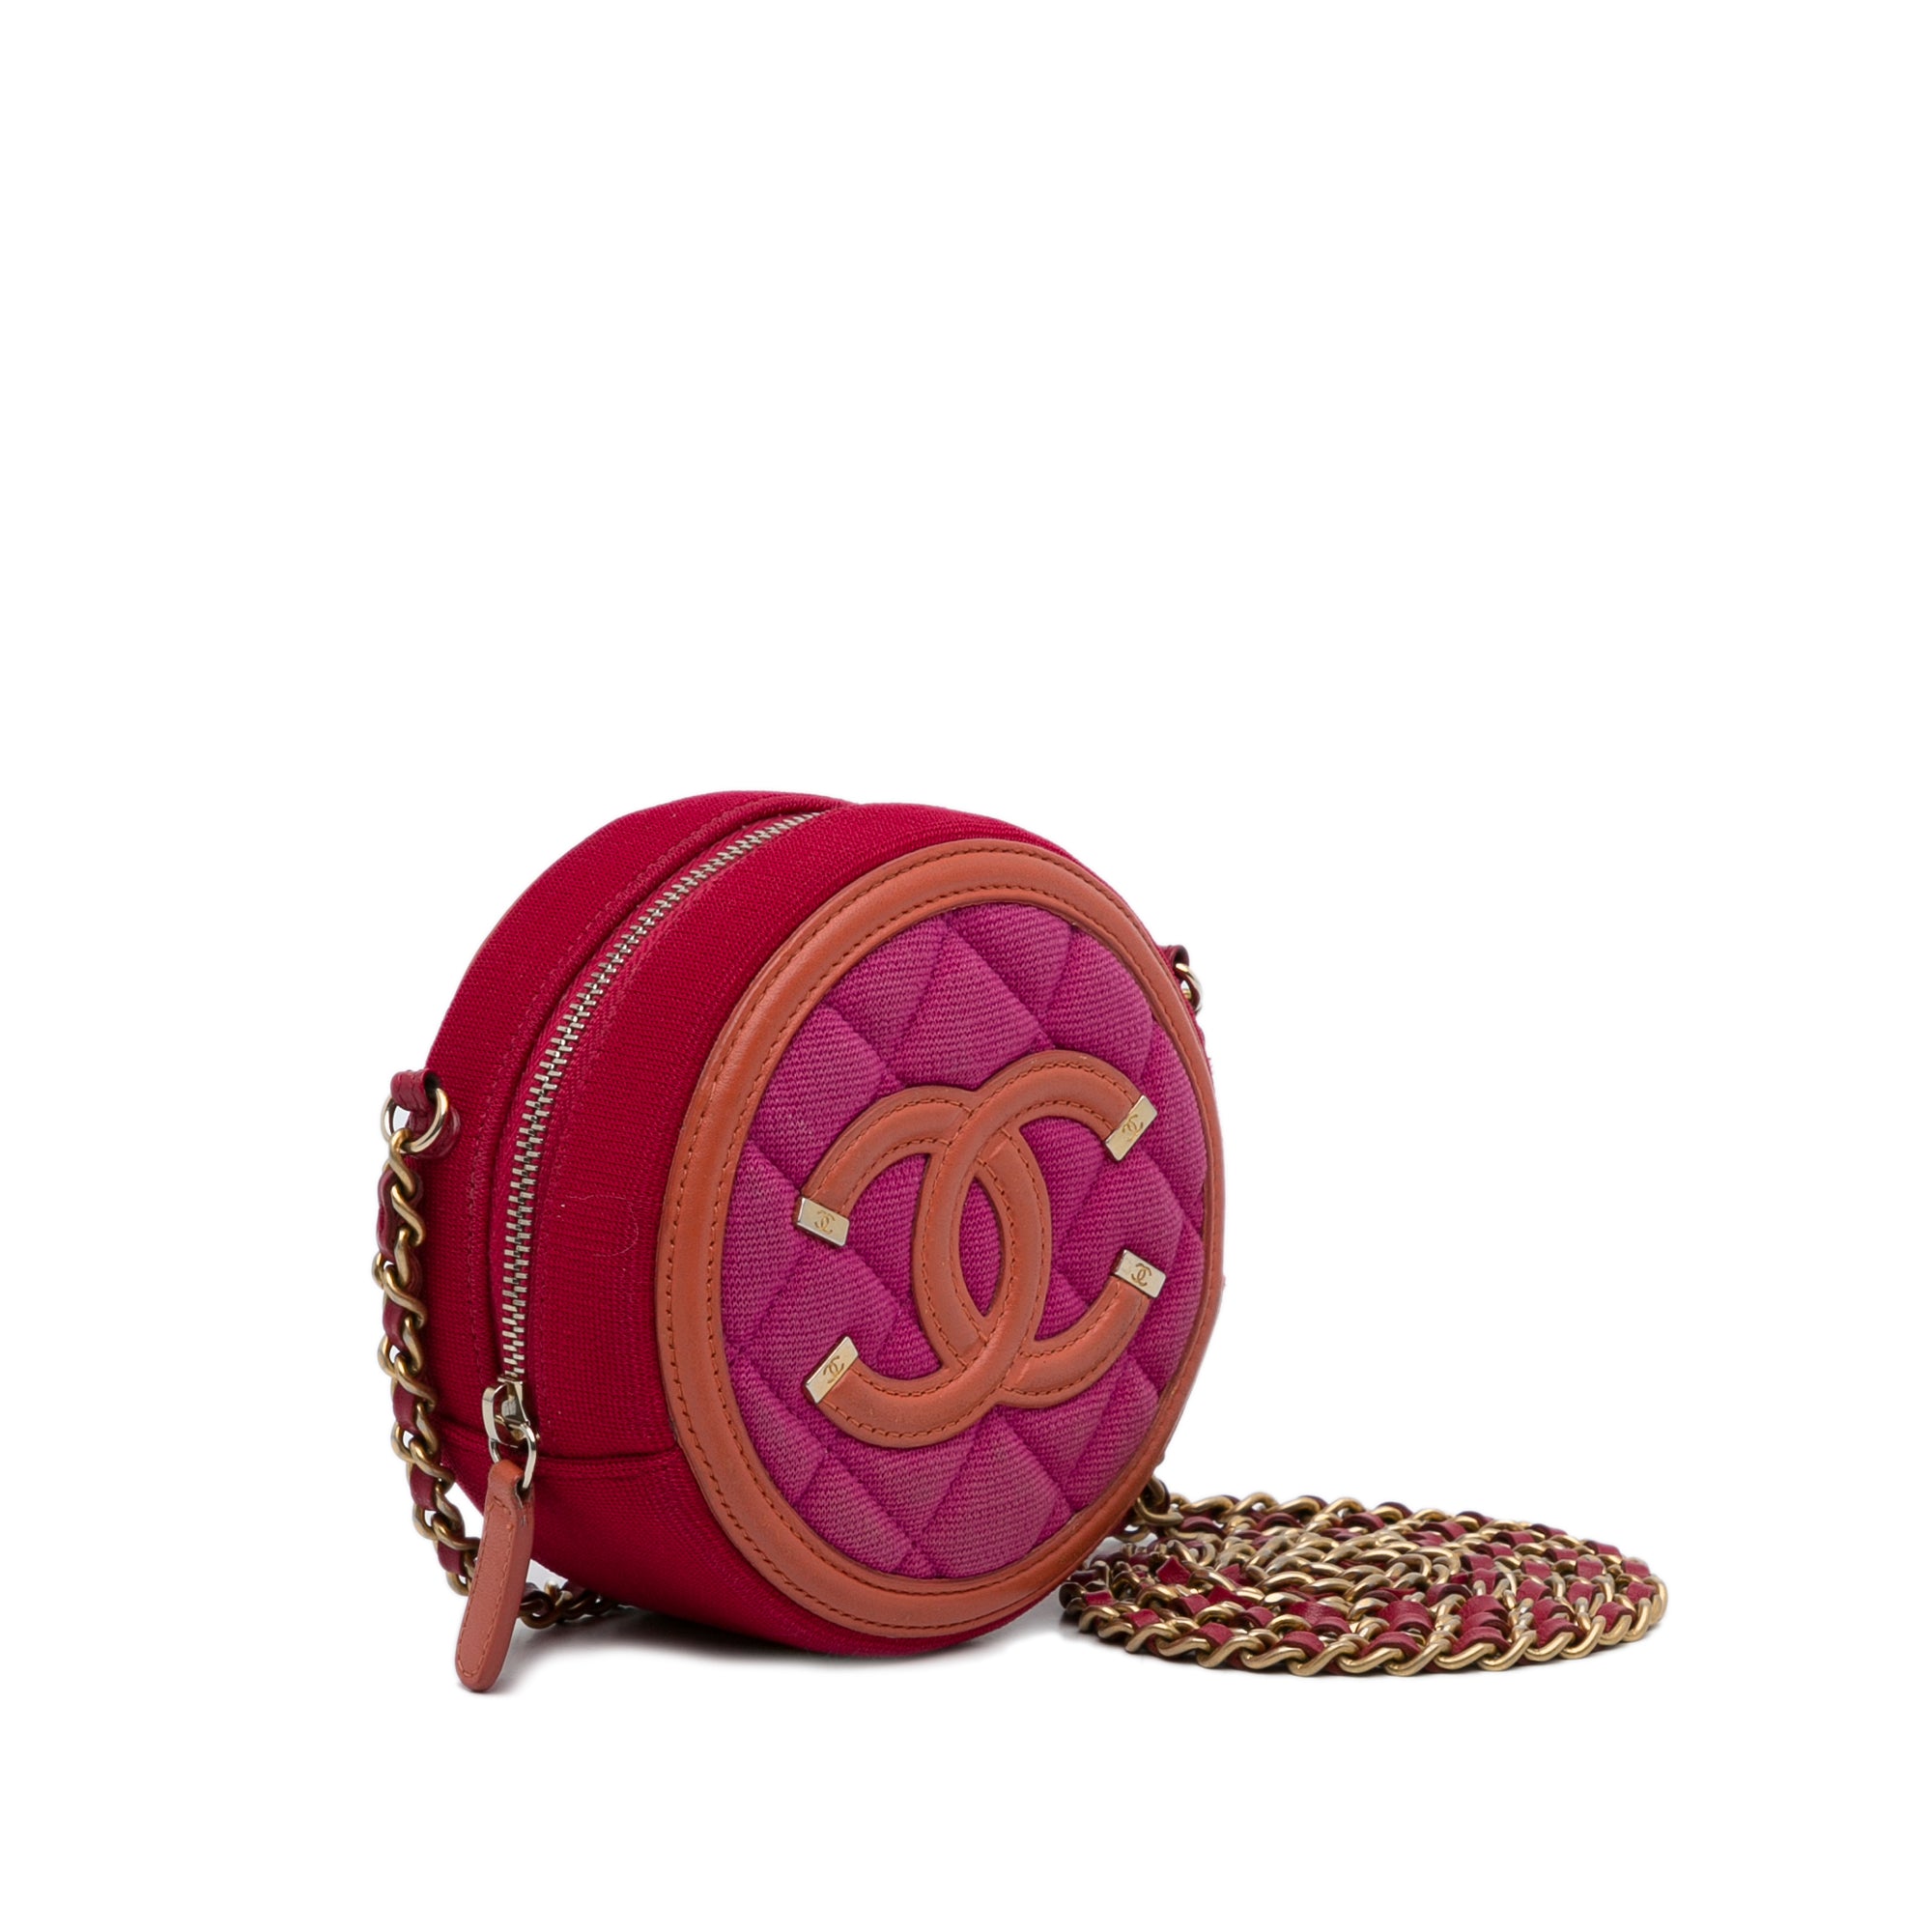 Chanel Brand New Red Camellia Velvet Clutch Crossbody Bag